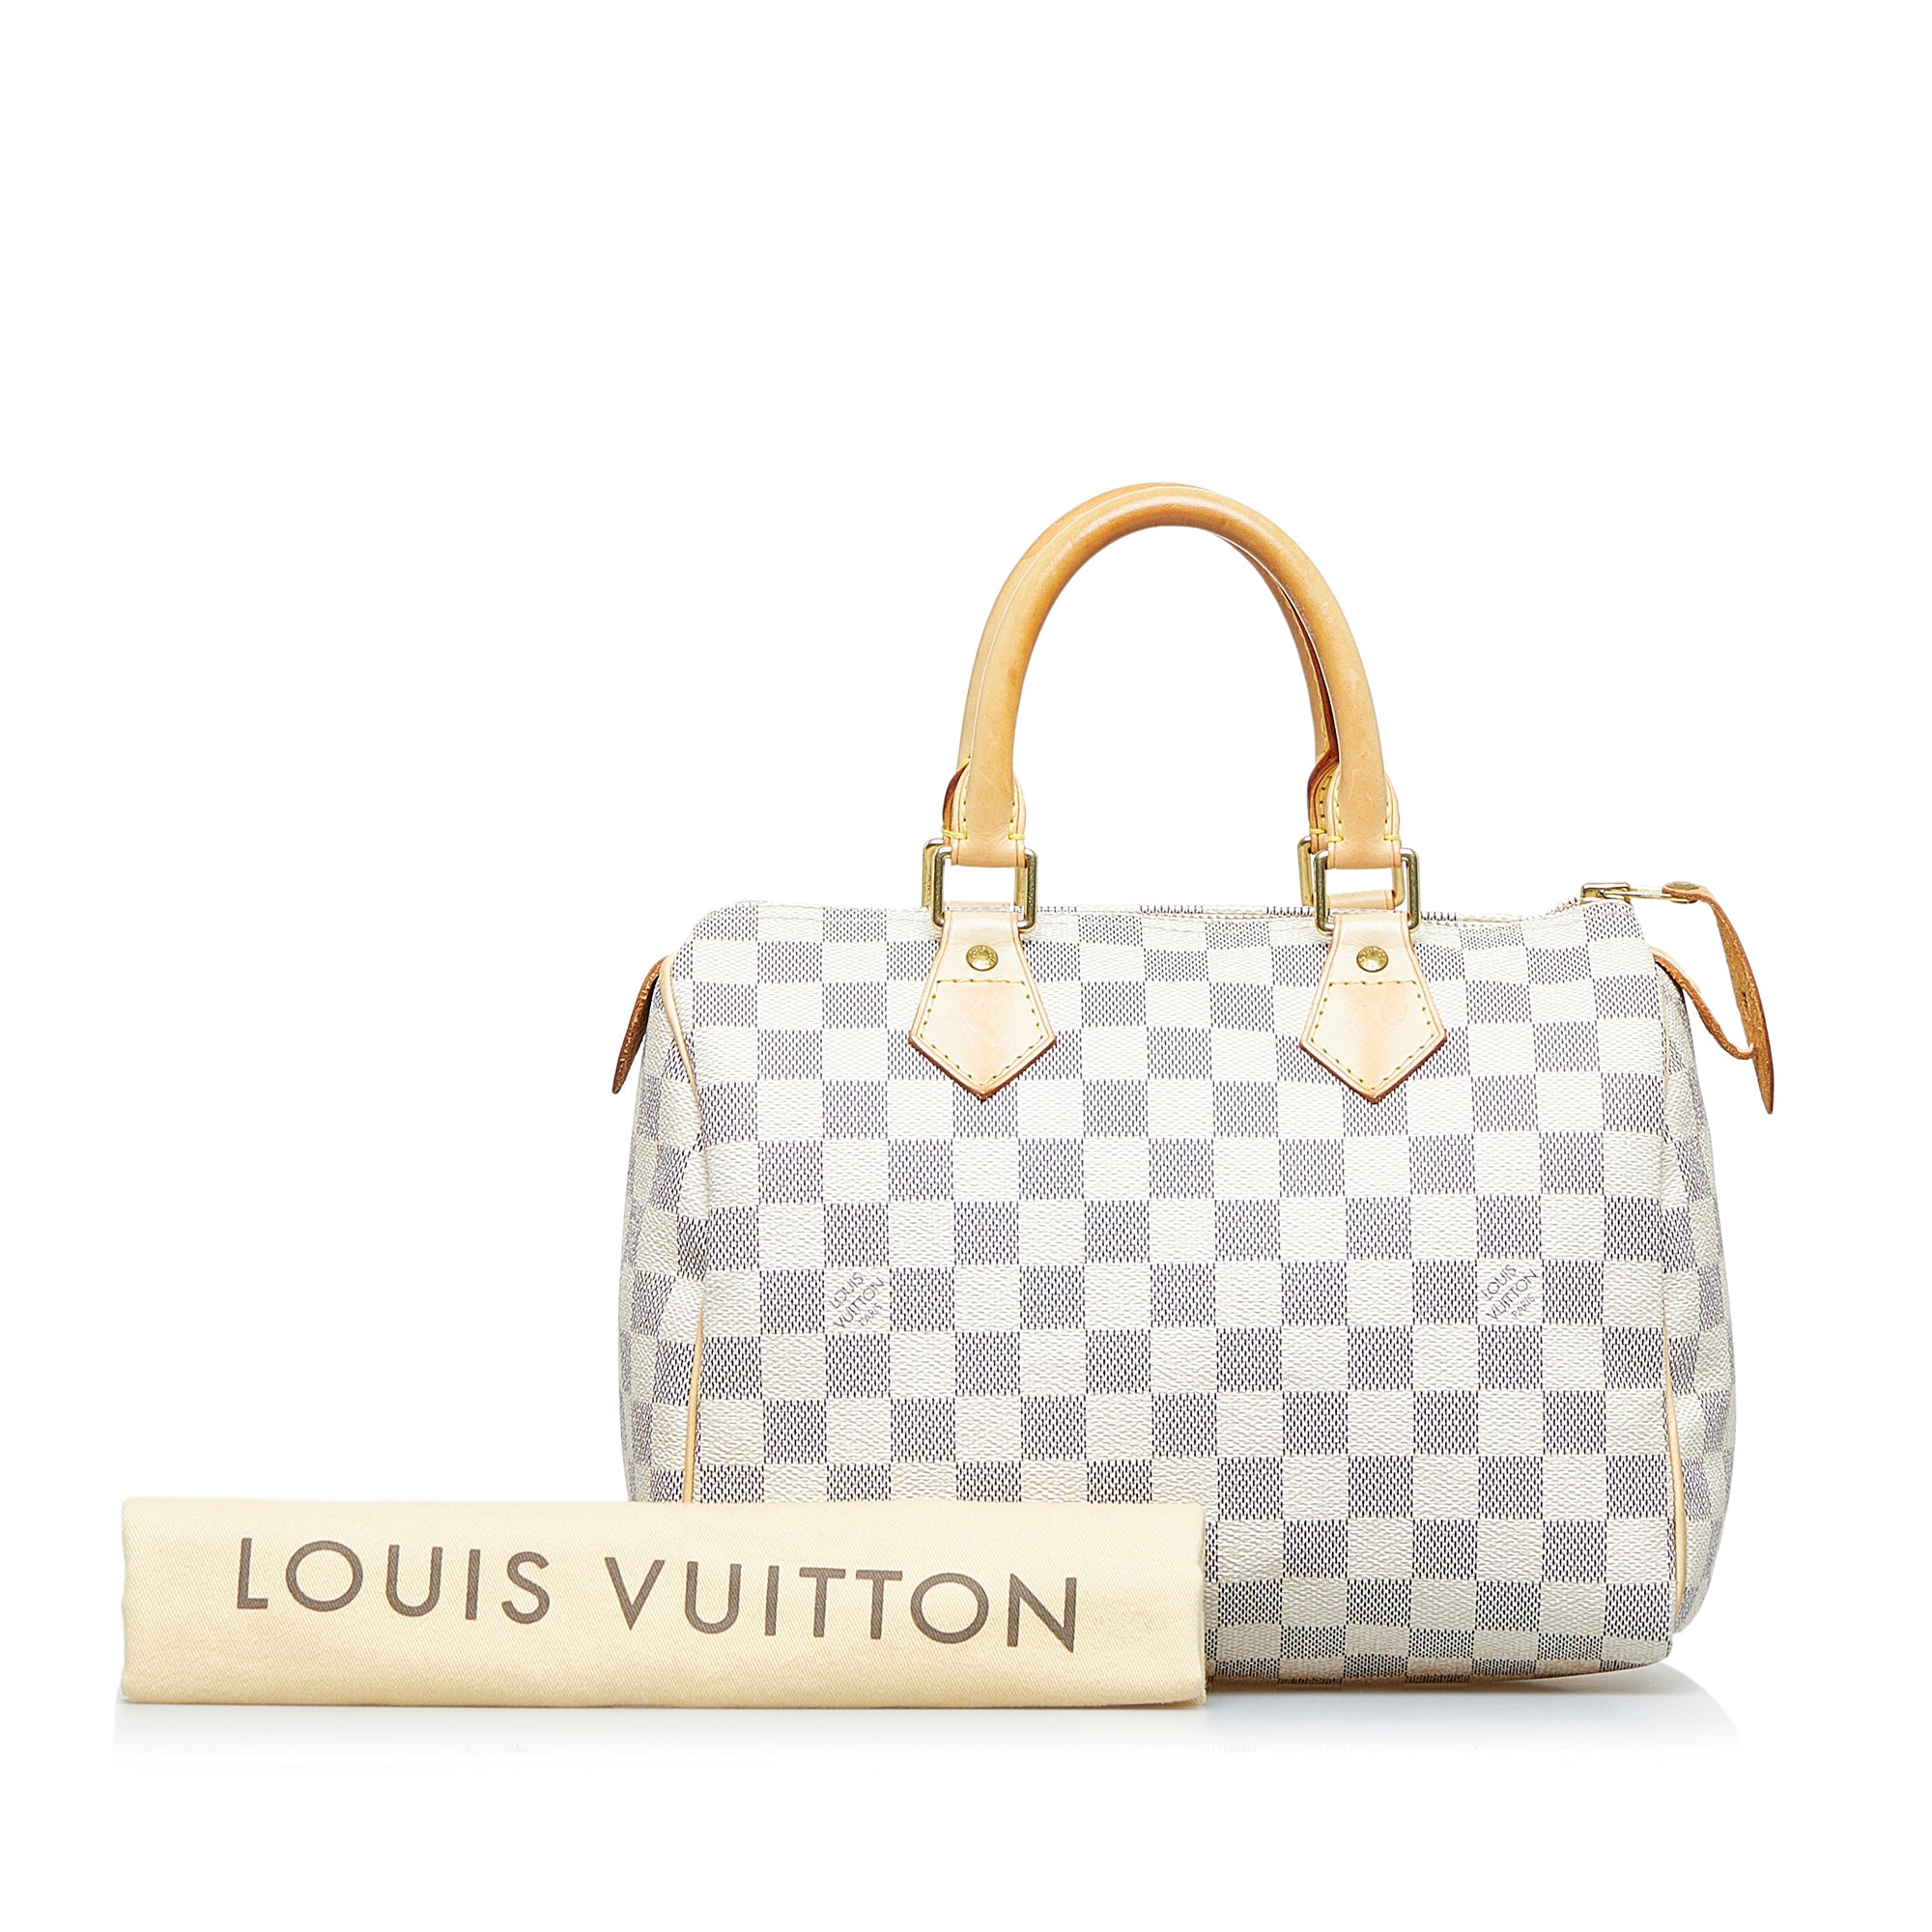 Louis Vuitton Damier Azur Speedy 25 